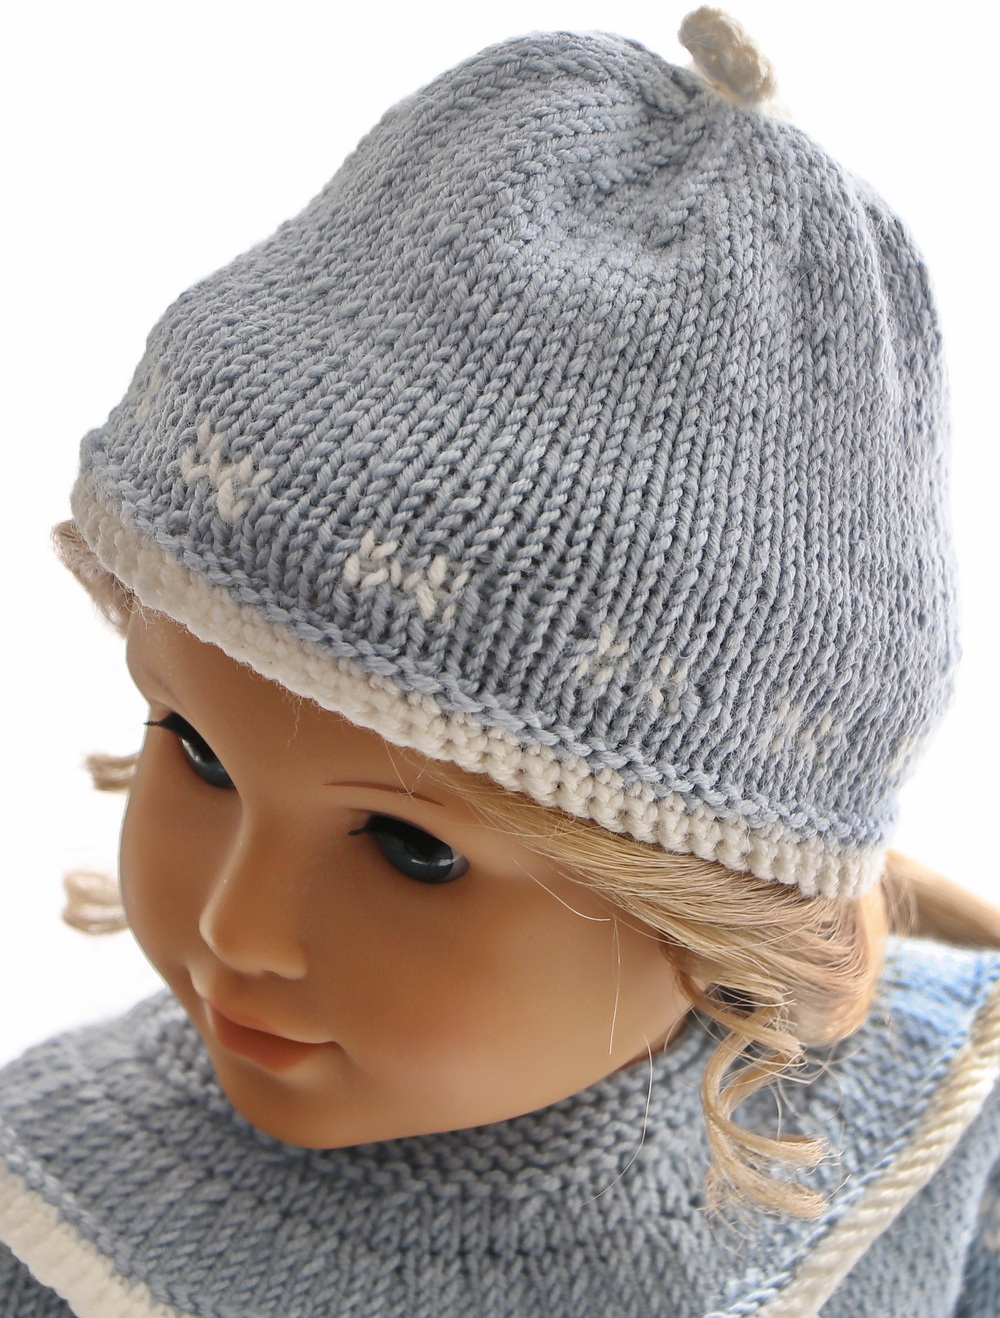 0232d-05-knitting-patterns-for-american-girl-dolls.jpg